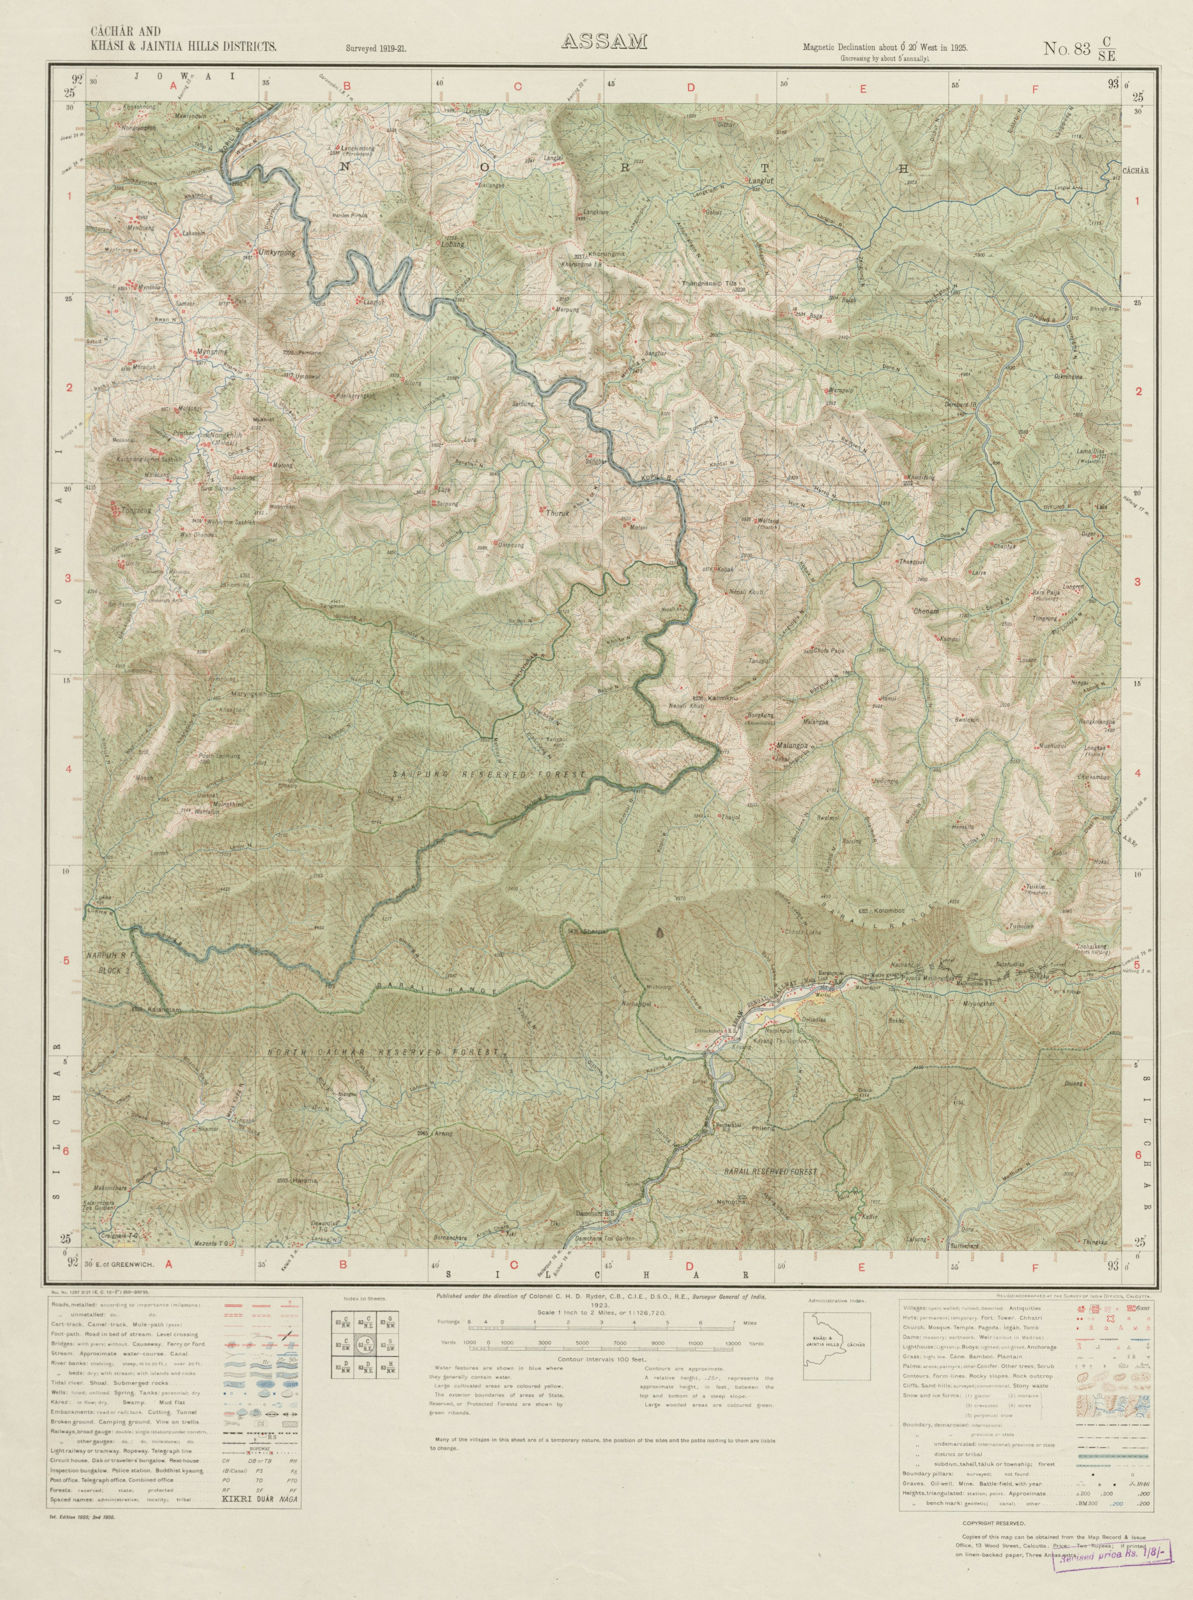 SURVEY OF INDIA 83 C/SE Assam Meghalaya Harangajao Saipung Forest  1923 map